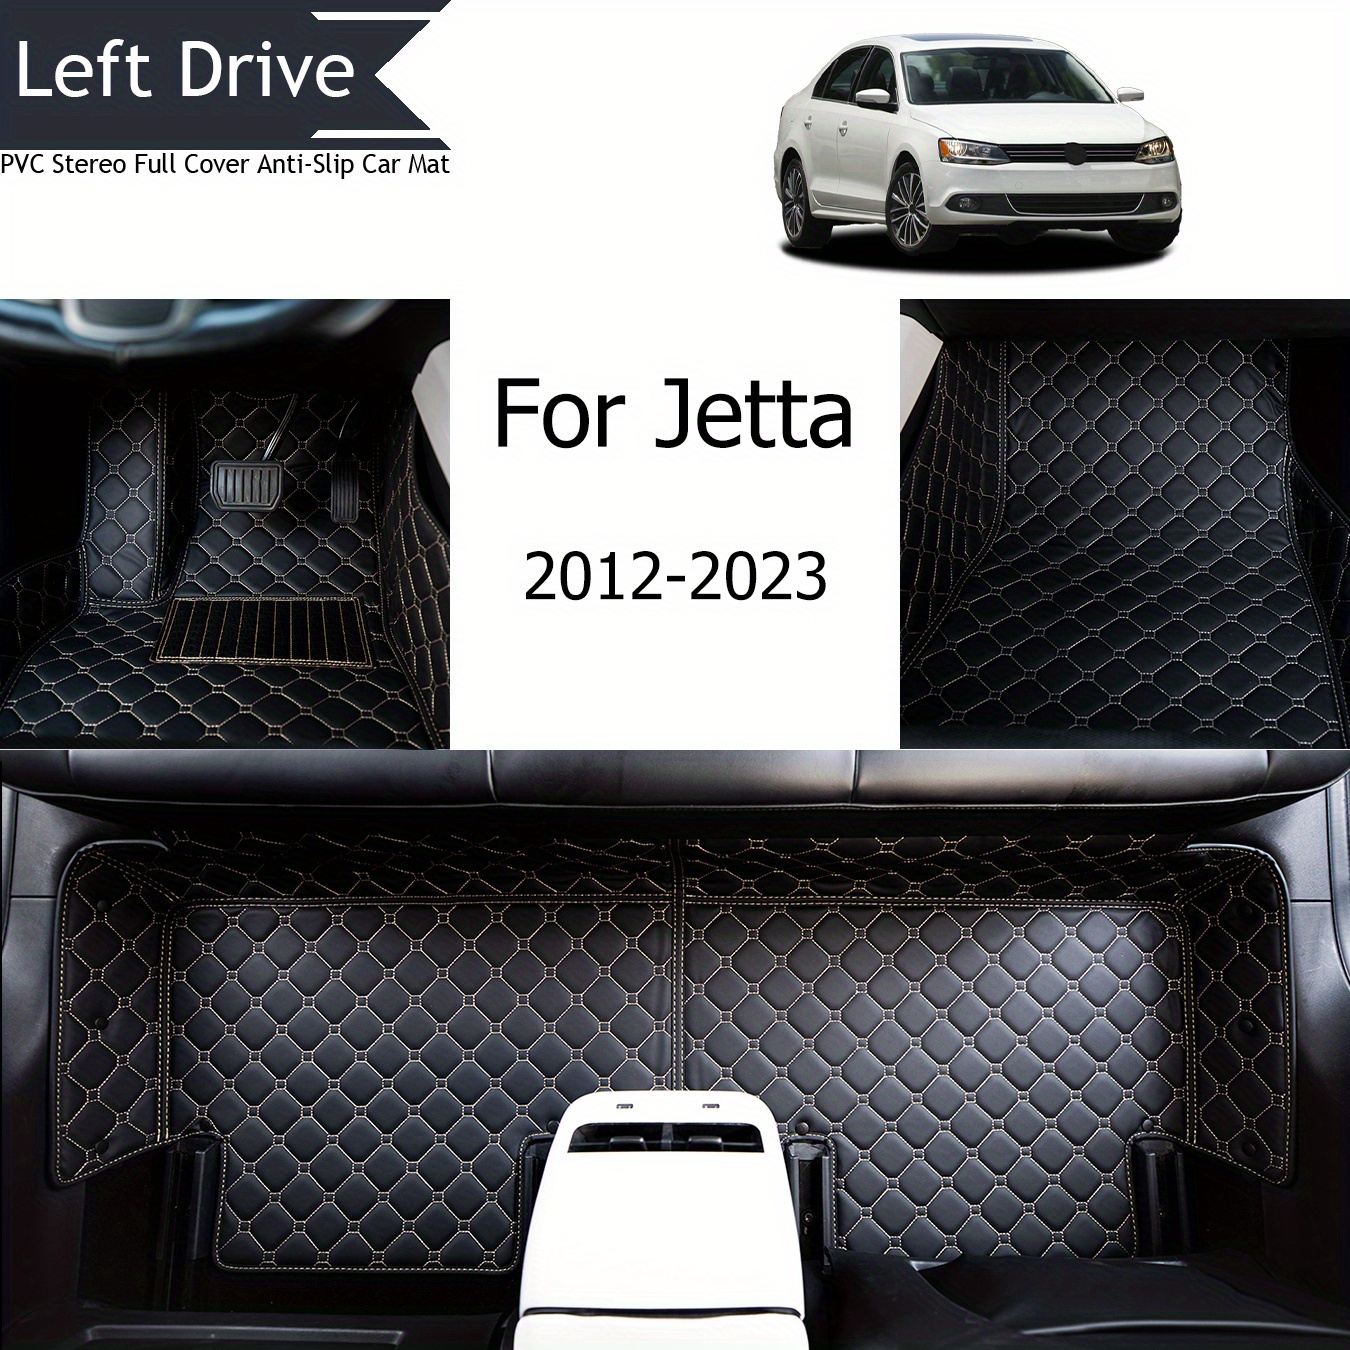 

Tegart [lhd]for Volkswagen For Jetta 2012-2023 3 Layer Pvc Stereo Full Cover Anti-slip Car Mat